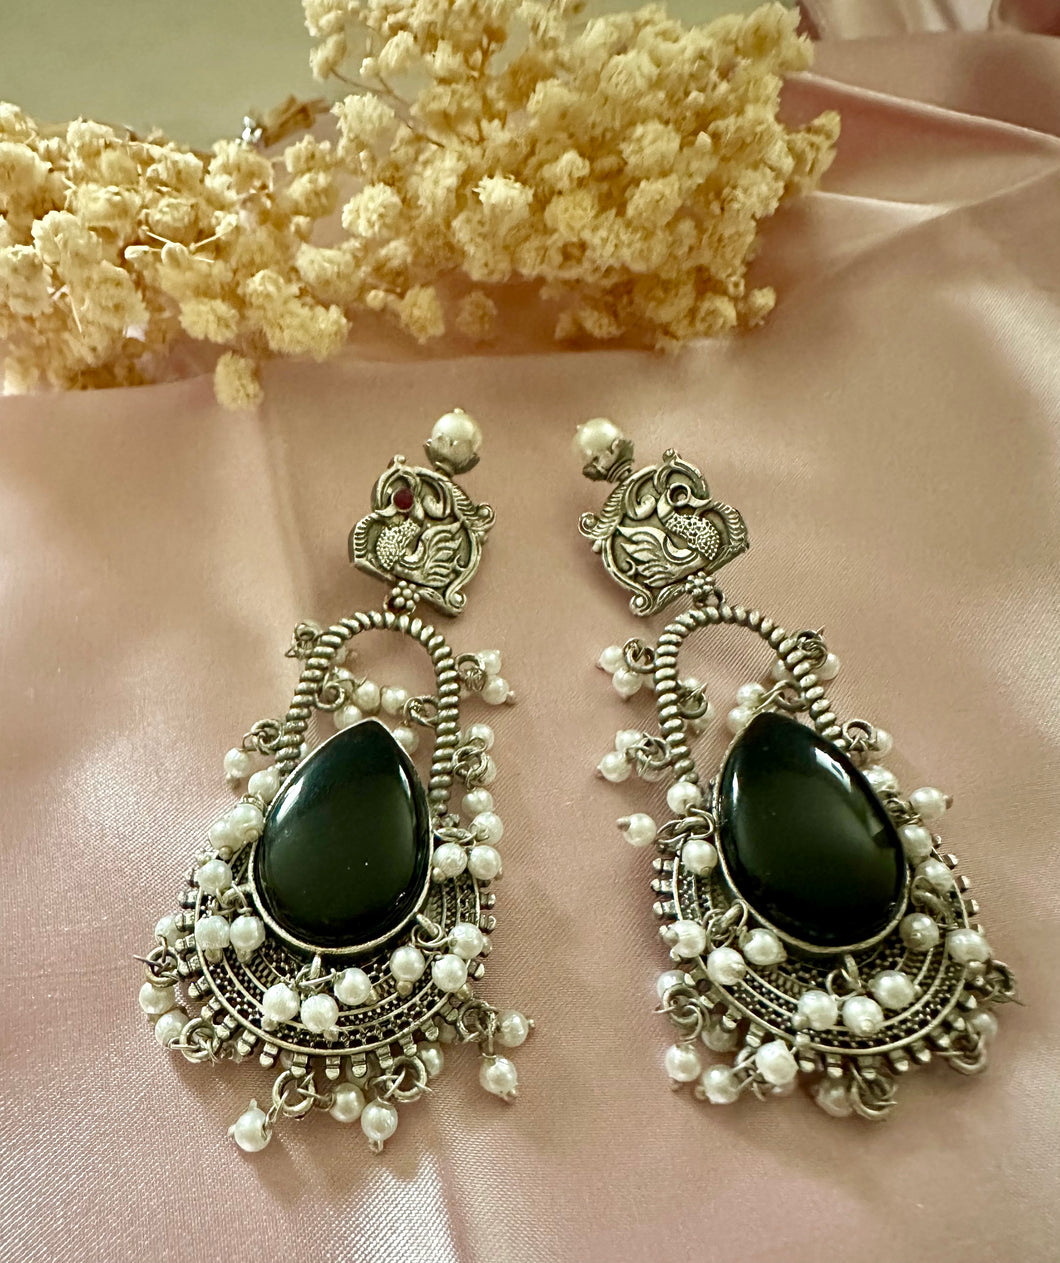 Black oxidized earrings